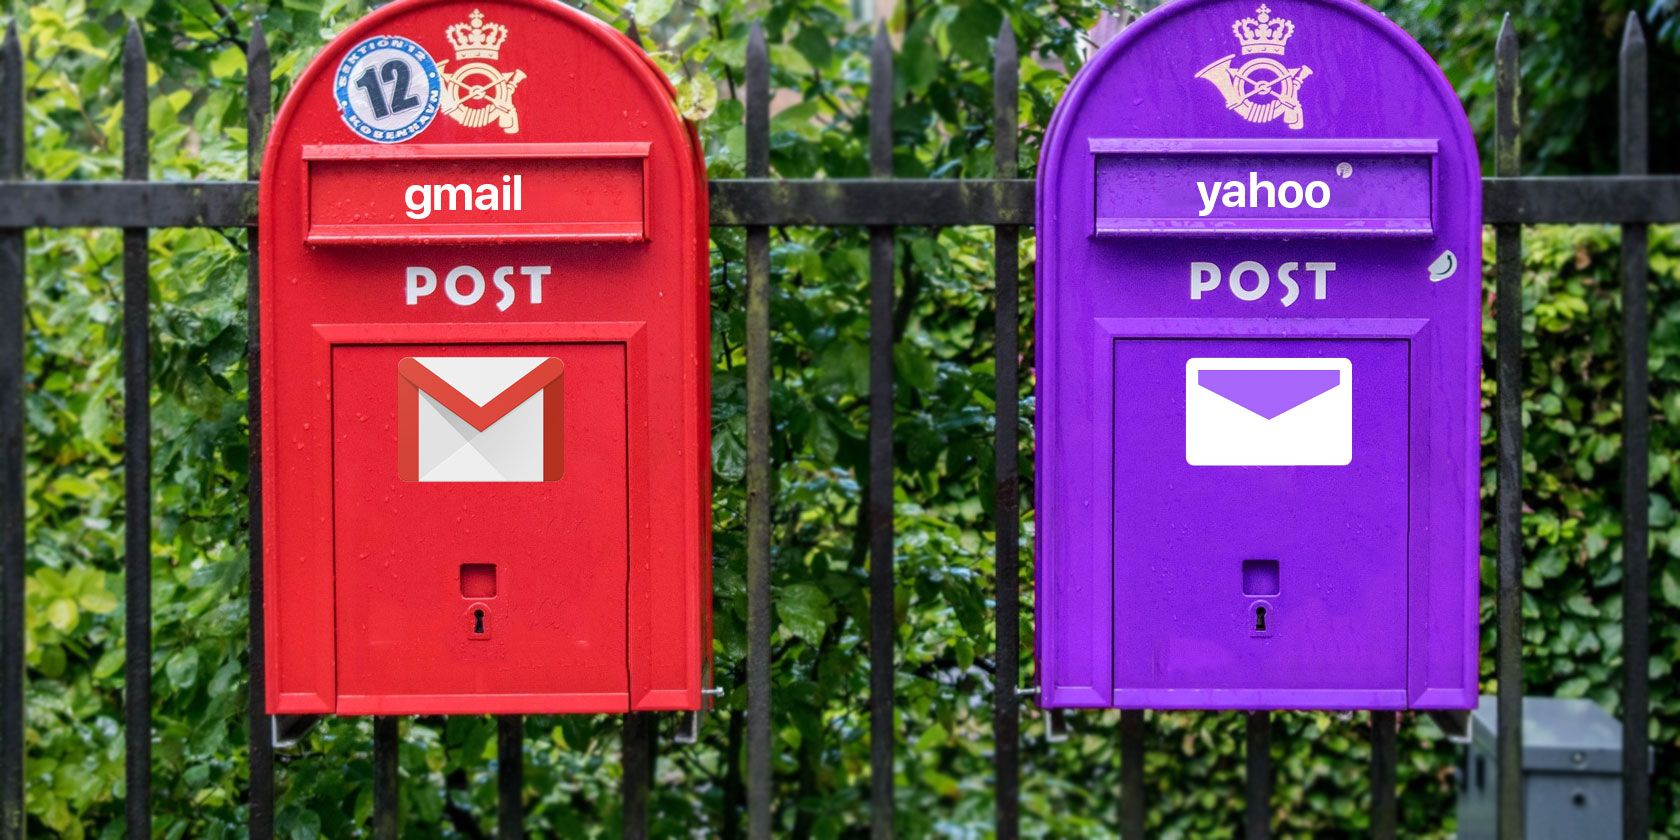 apple mail vs outlook vs gmail